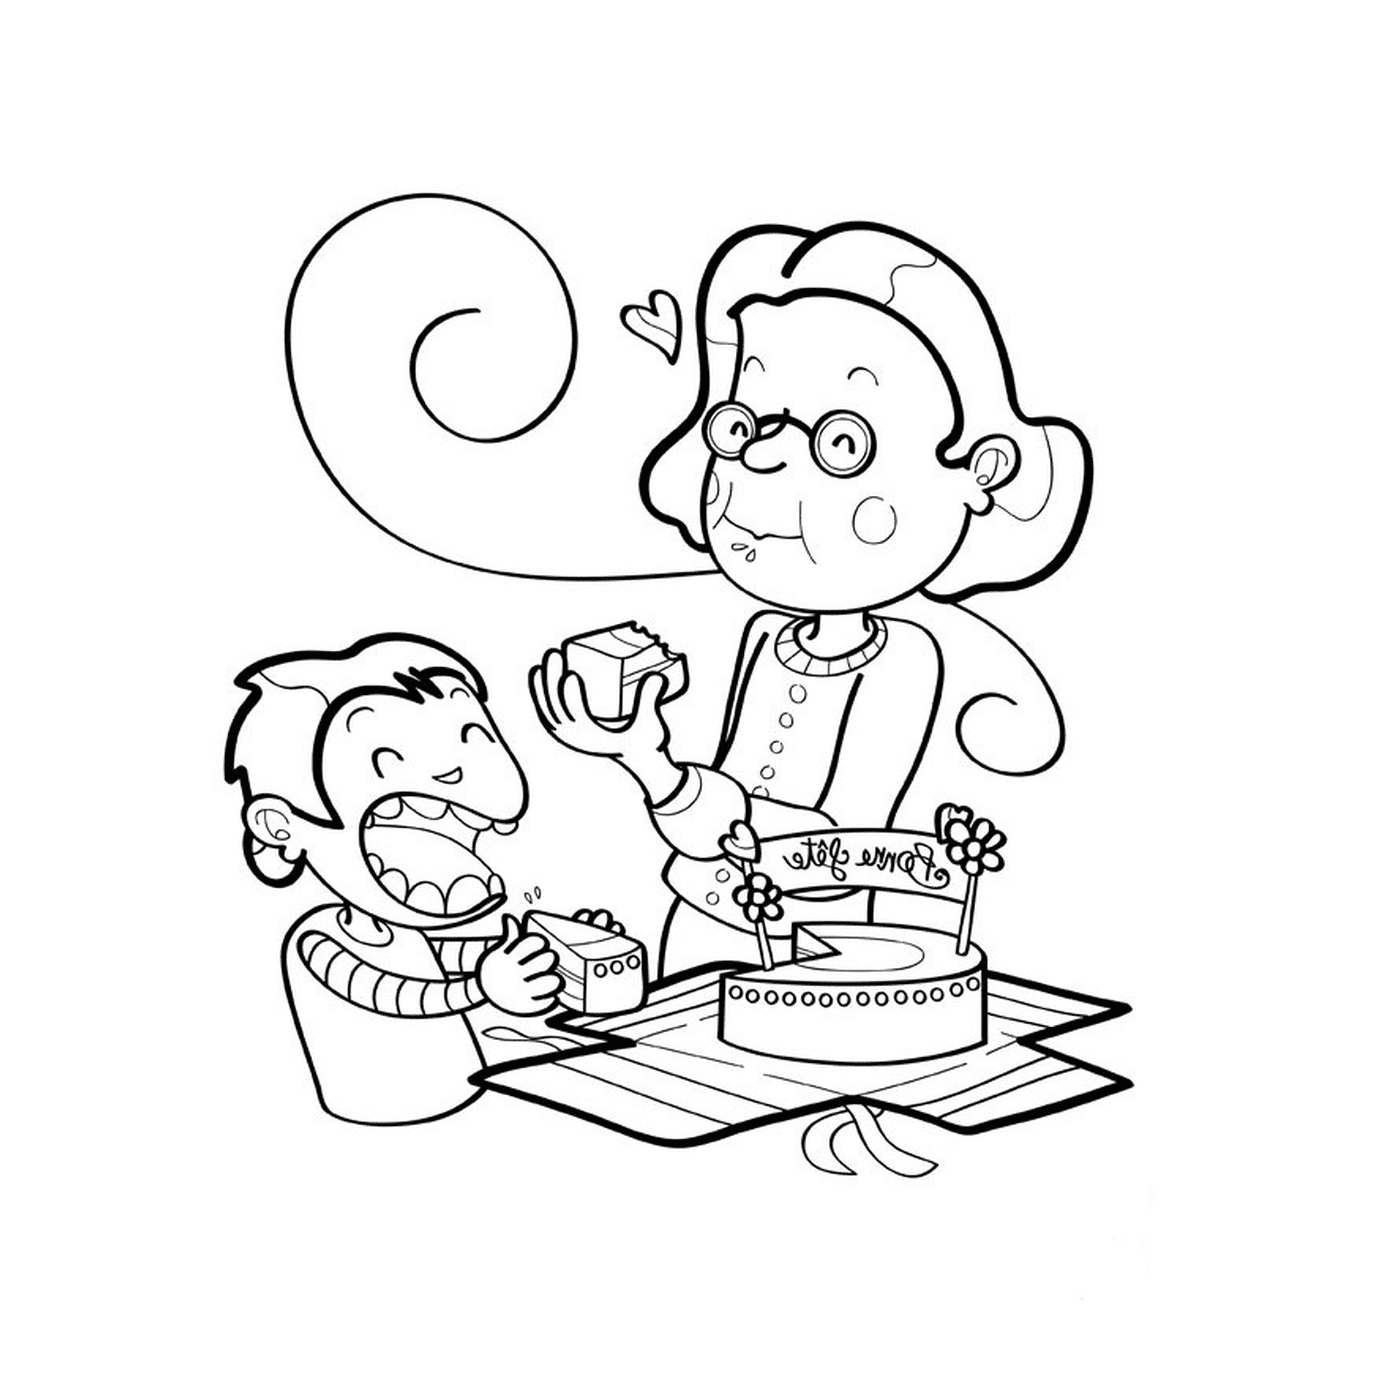  Una anciana y un mono comiendo pastel 